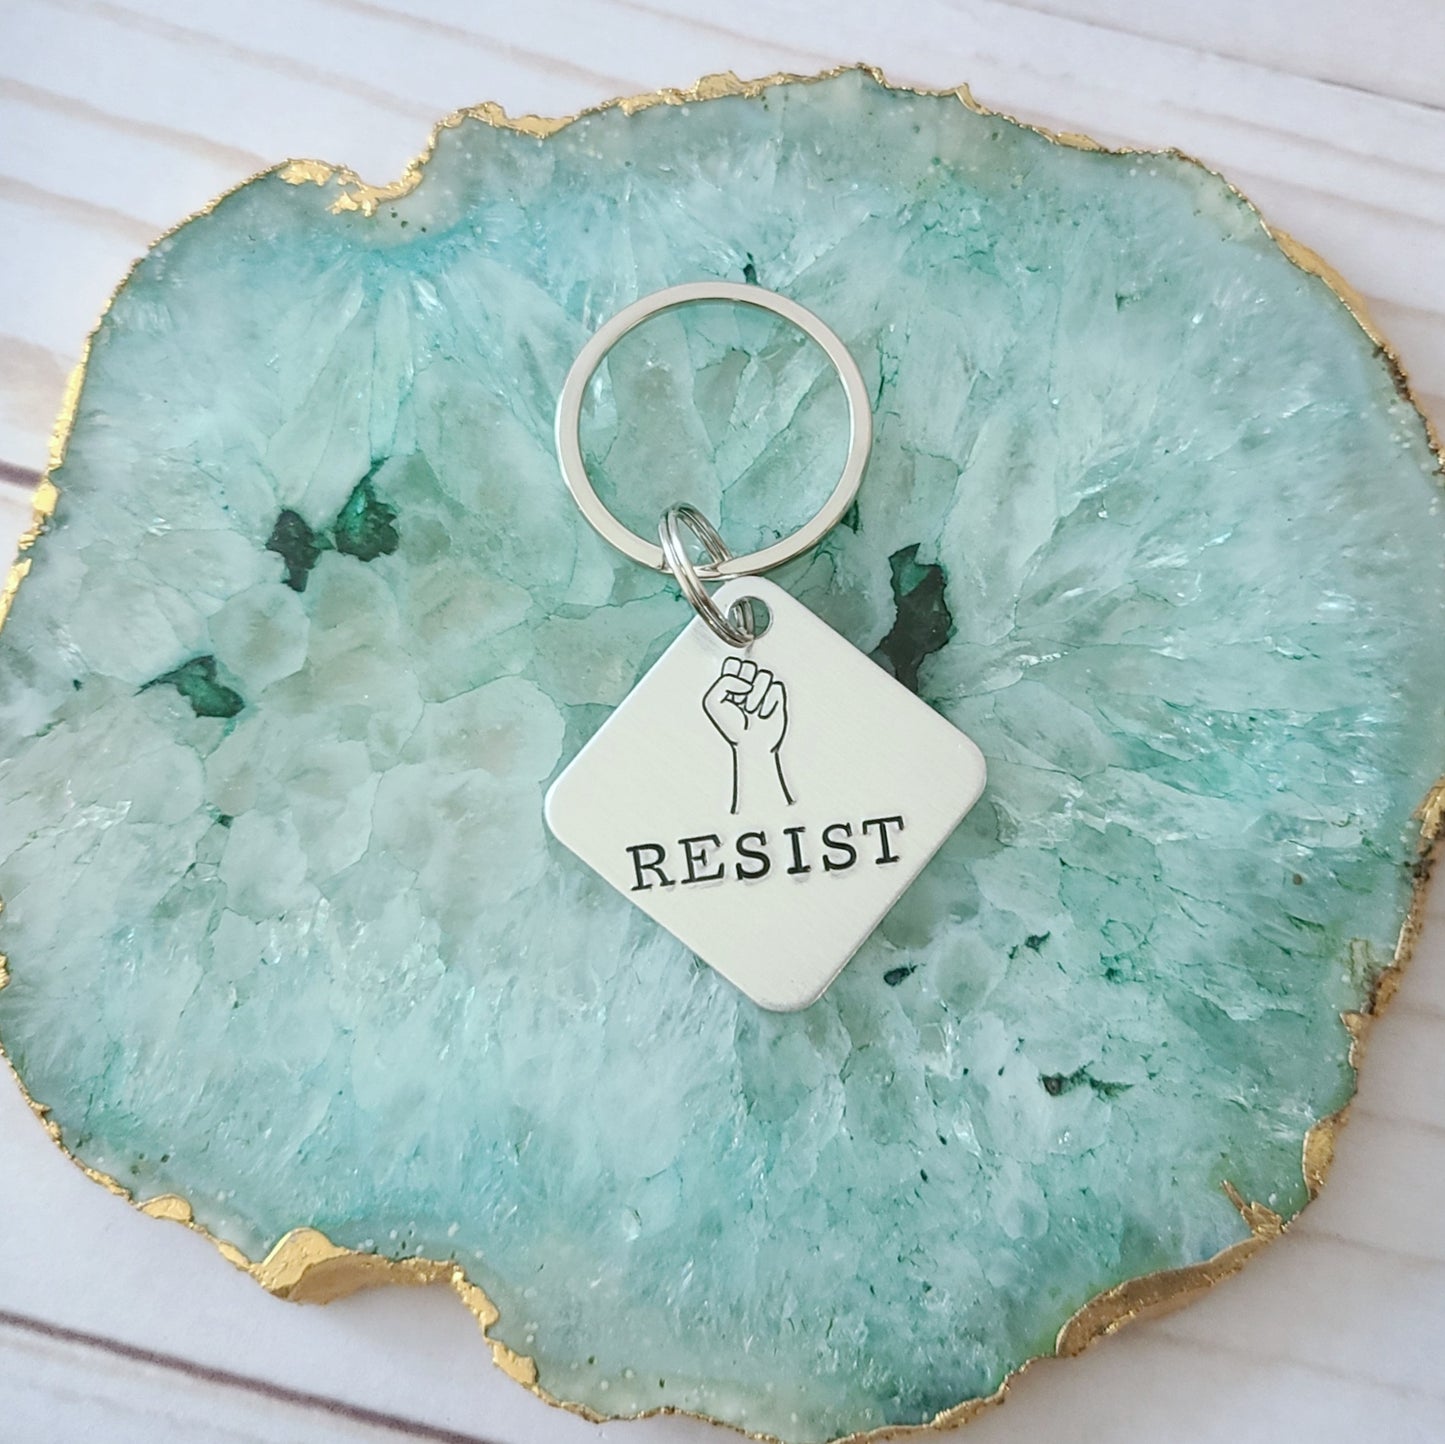 Resist Keychain